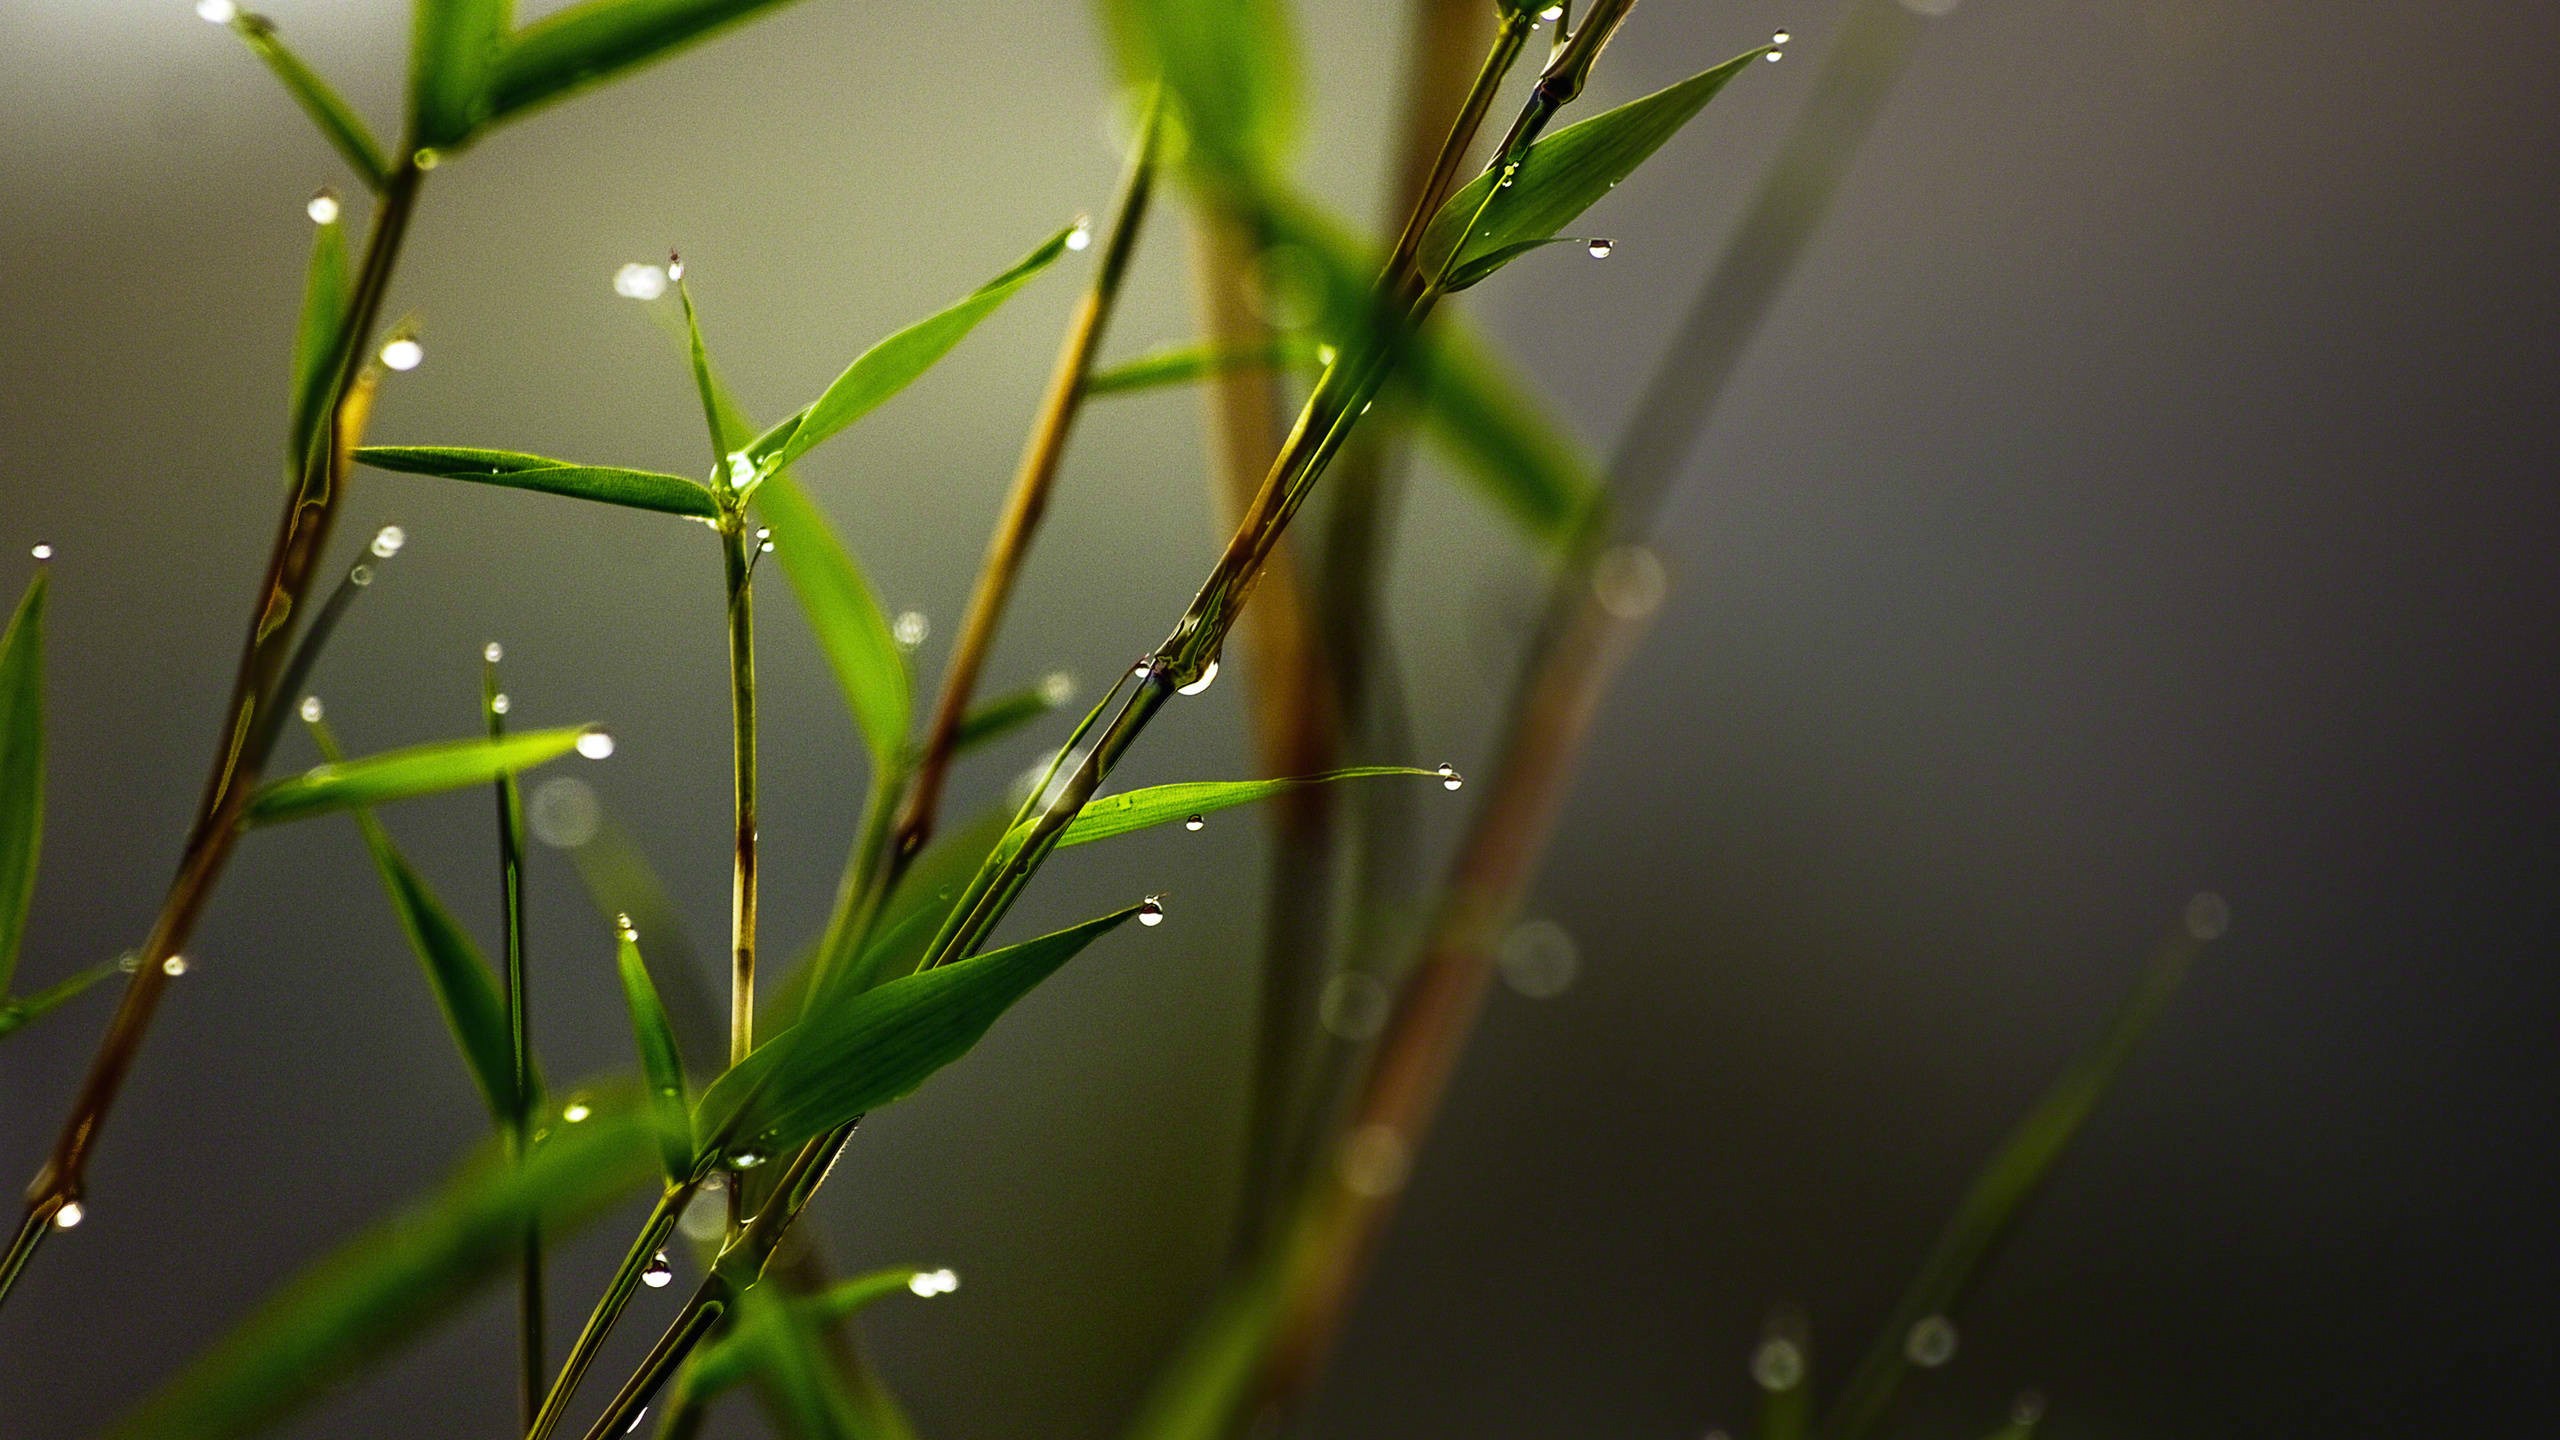 General 2560x1440 nature plants rain macro leaves bamboo water drops film grain